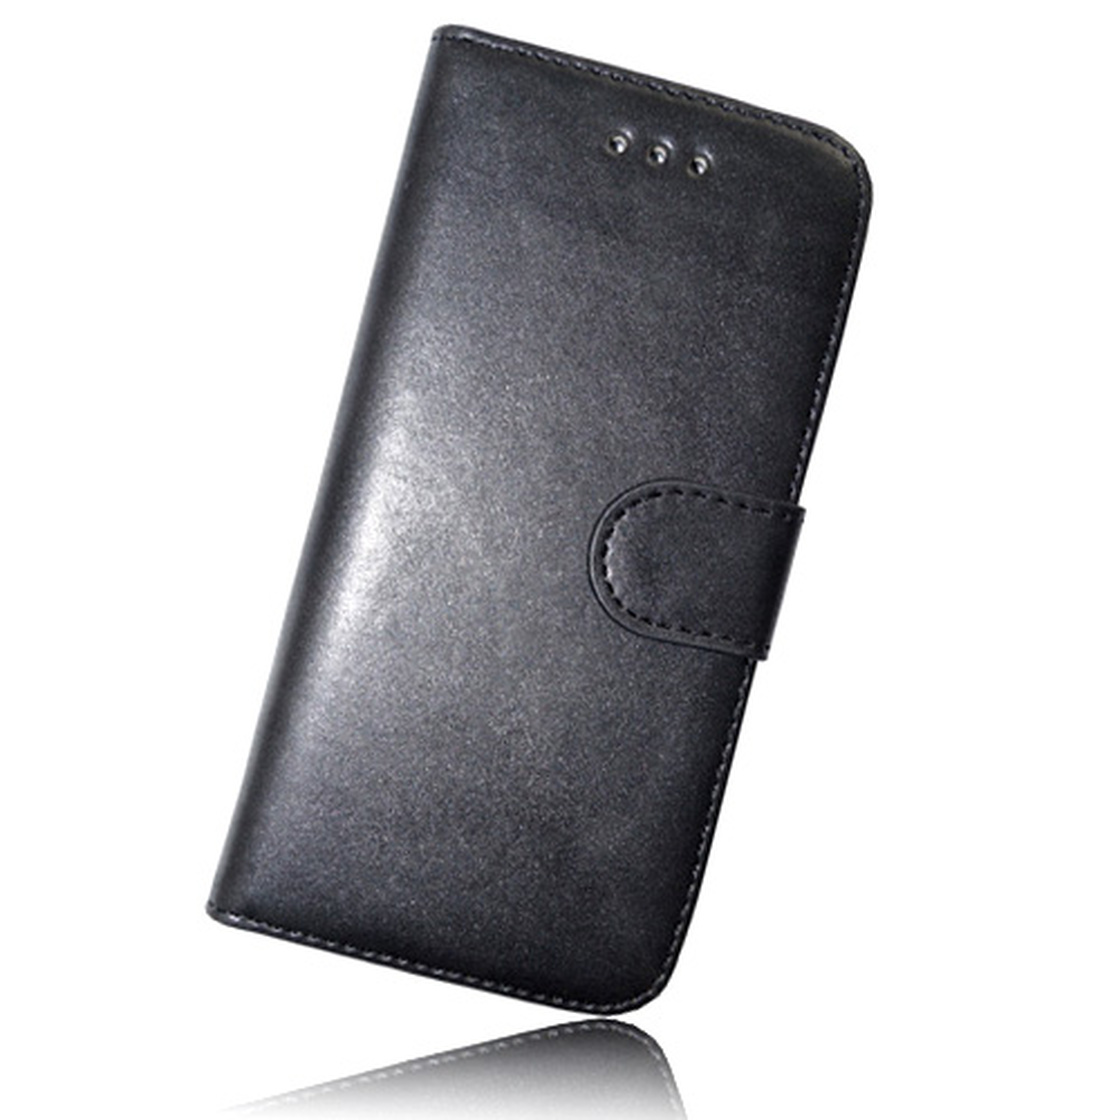 Advertentie Assimileren schaamte Kunstleder Bookstyle Tasche mit Lasche für Sony Xperia Z5 Compact Sch, 9,90  €